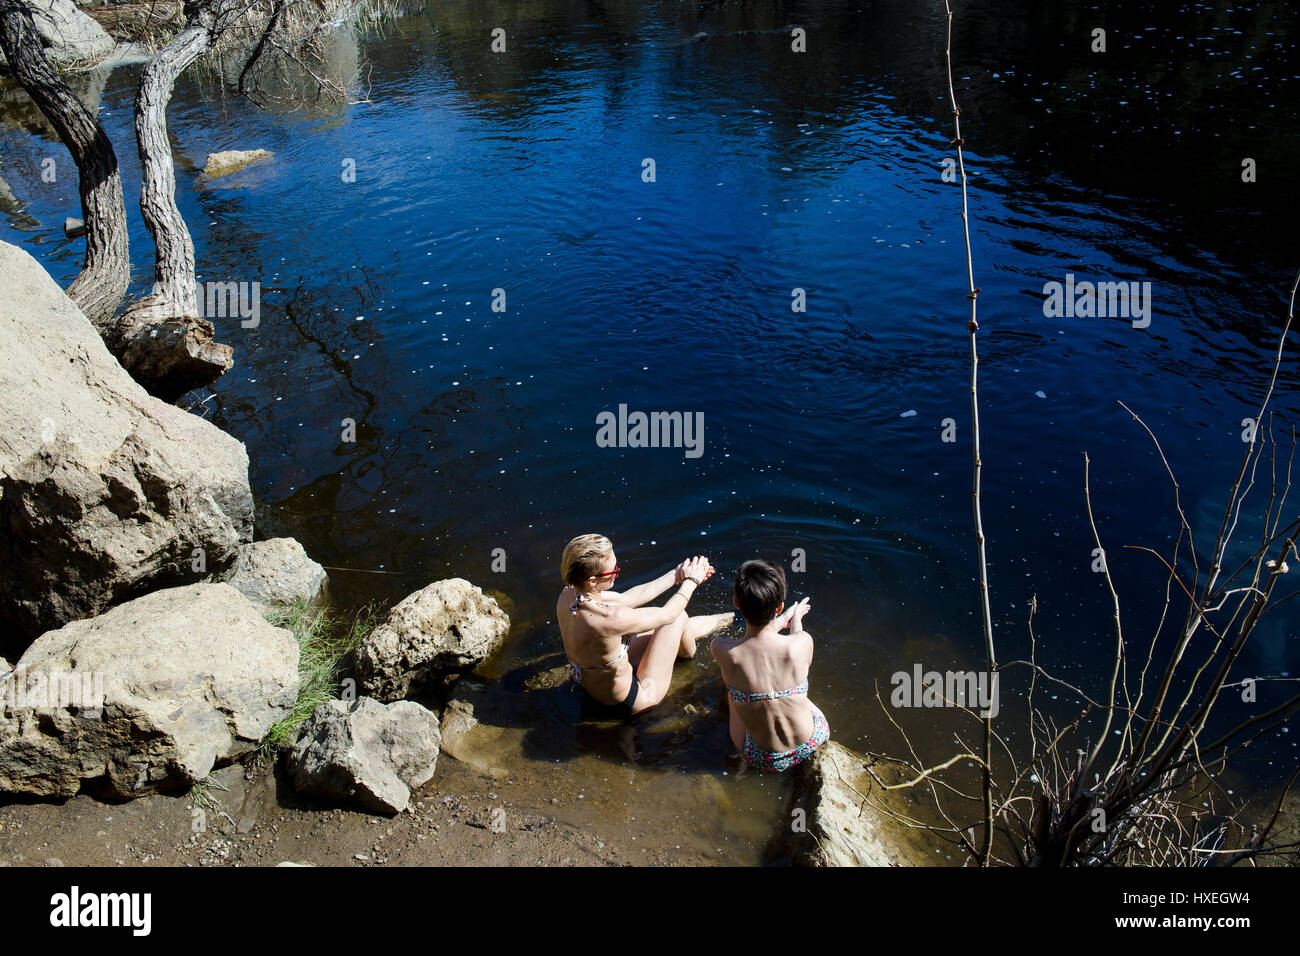 Le ragazze godono di un centro termale all'aperto giorno insieme a sorgenti naturali. Foto Stock